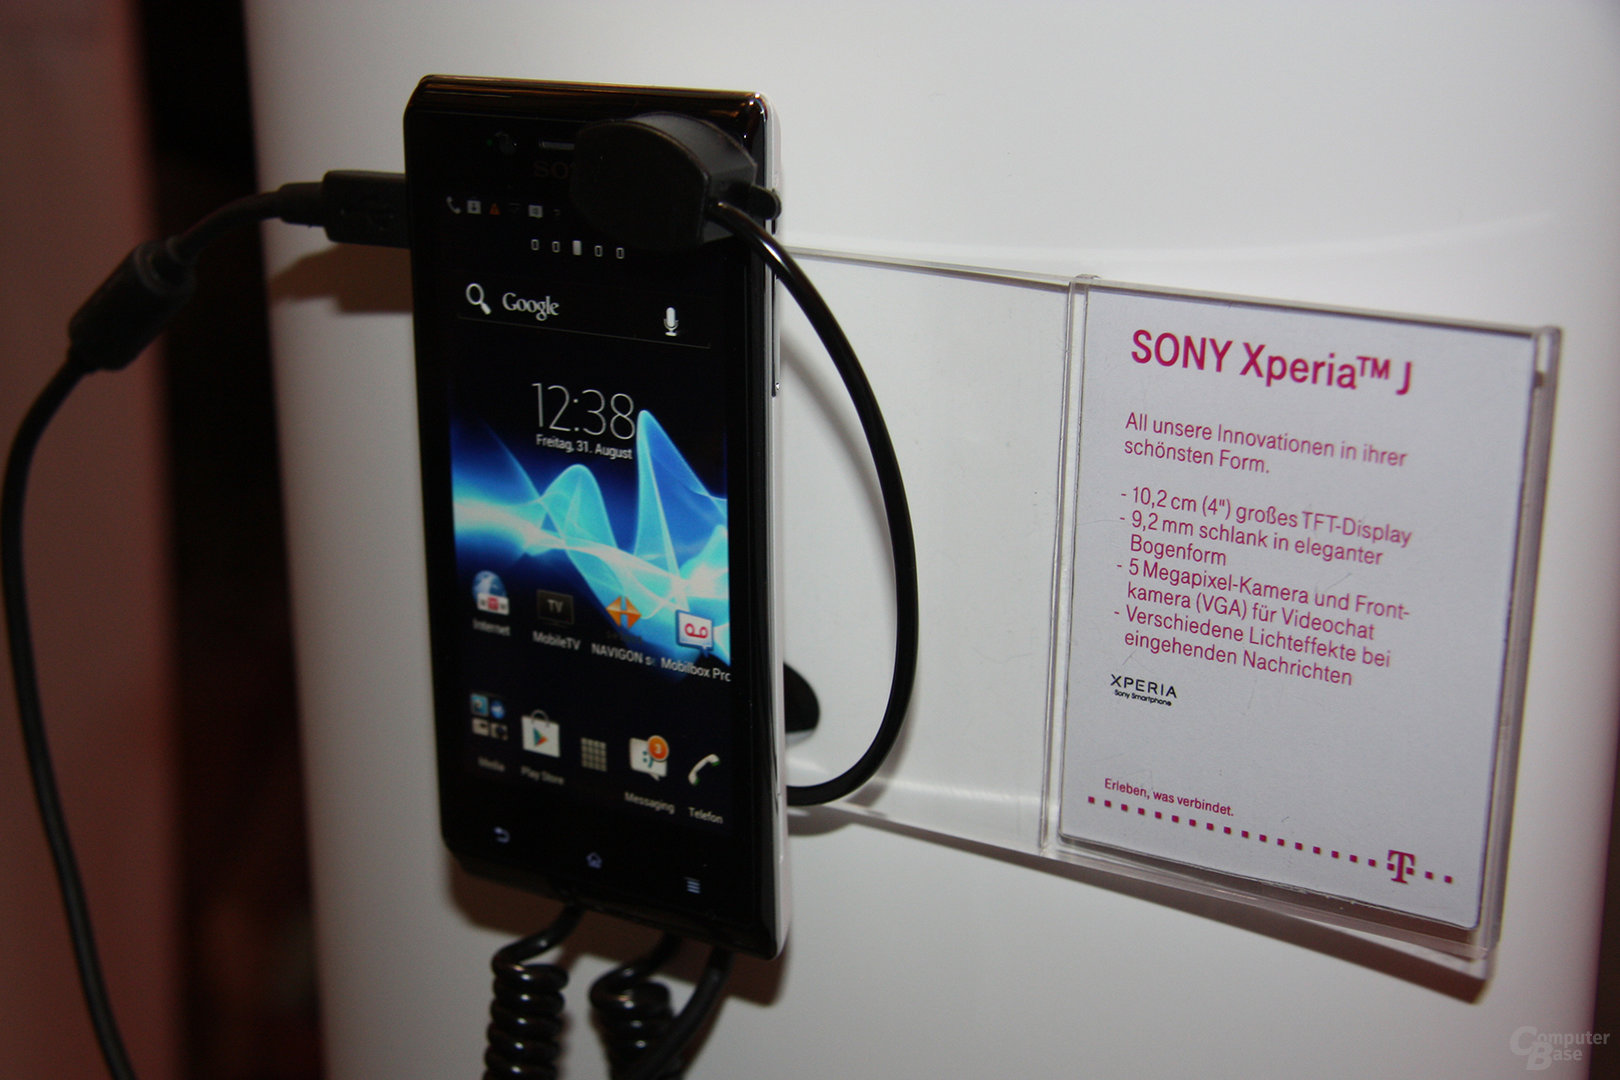 Sony Xperia T, V und J